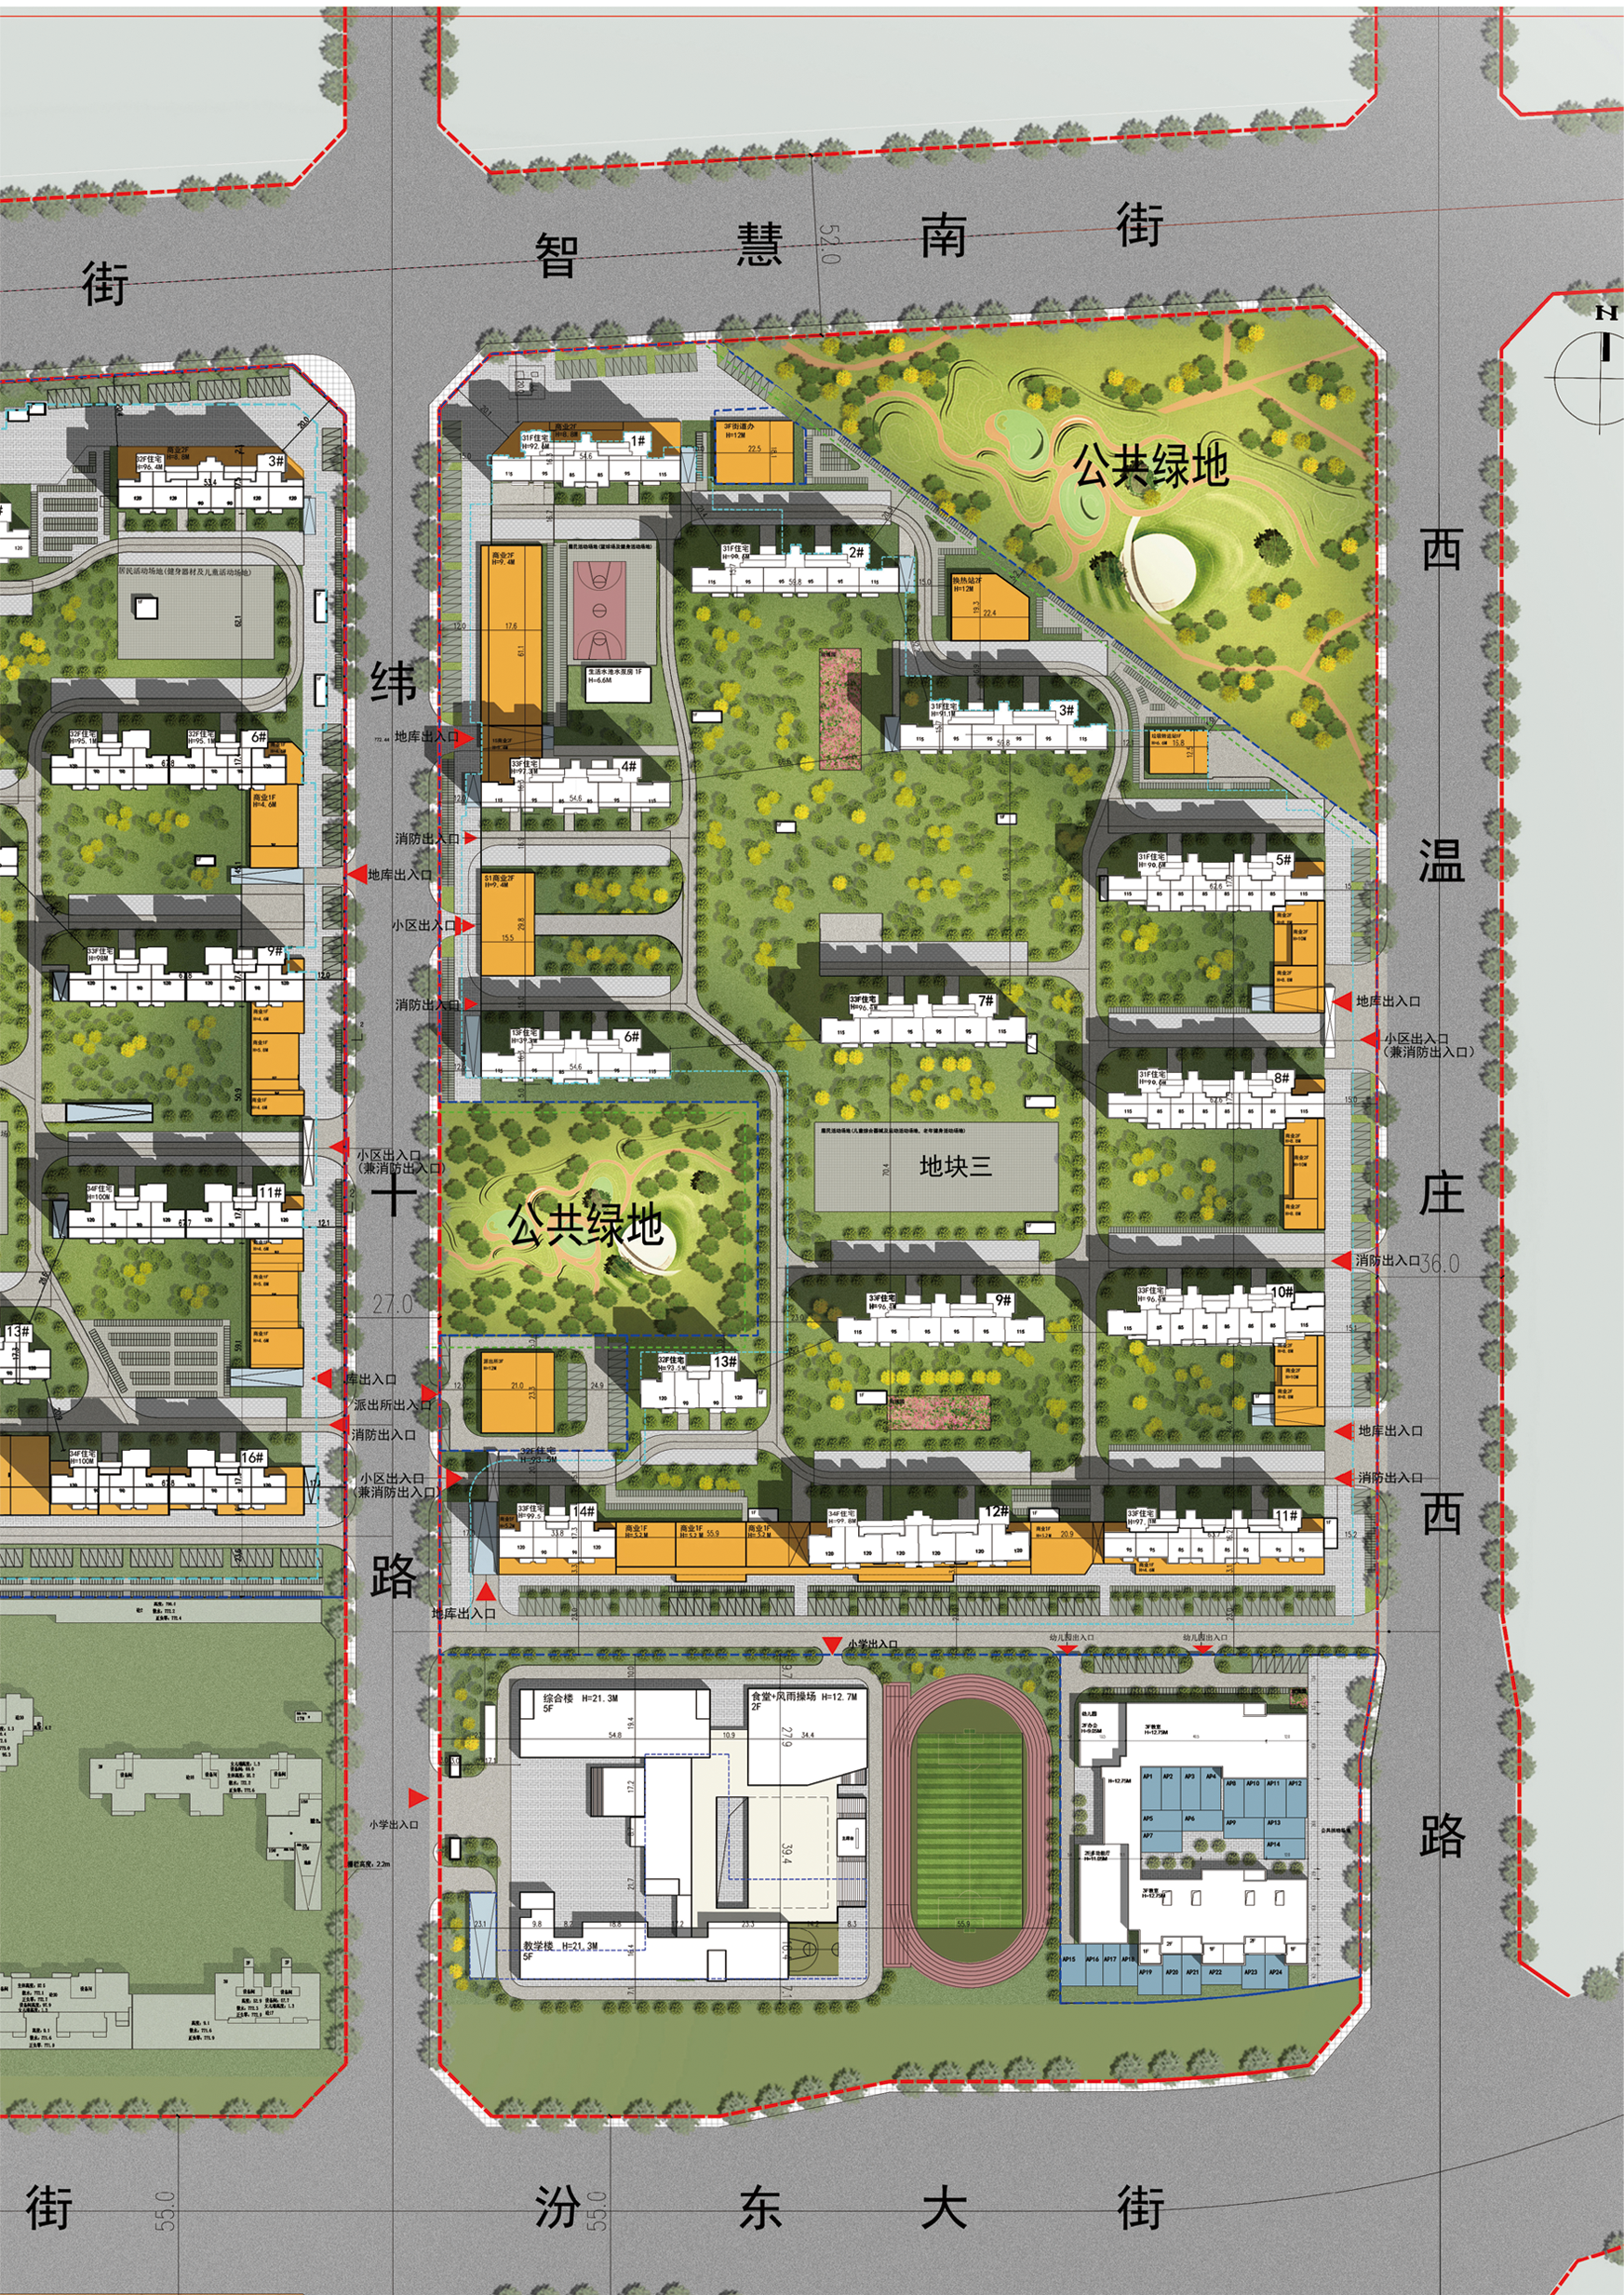 横河棚户区改造安置住房项目建筑工程规划方案公示